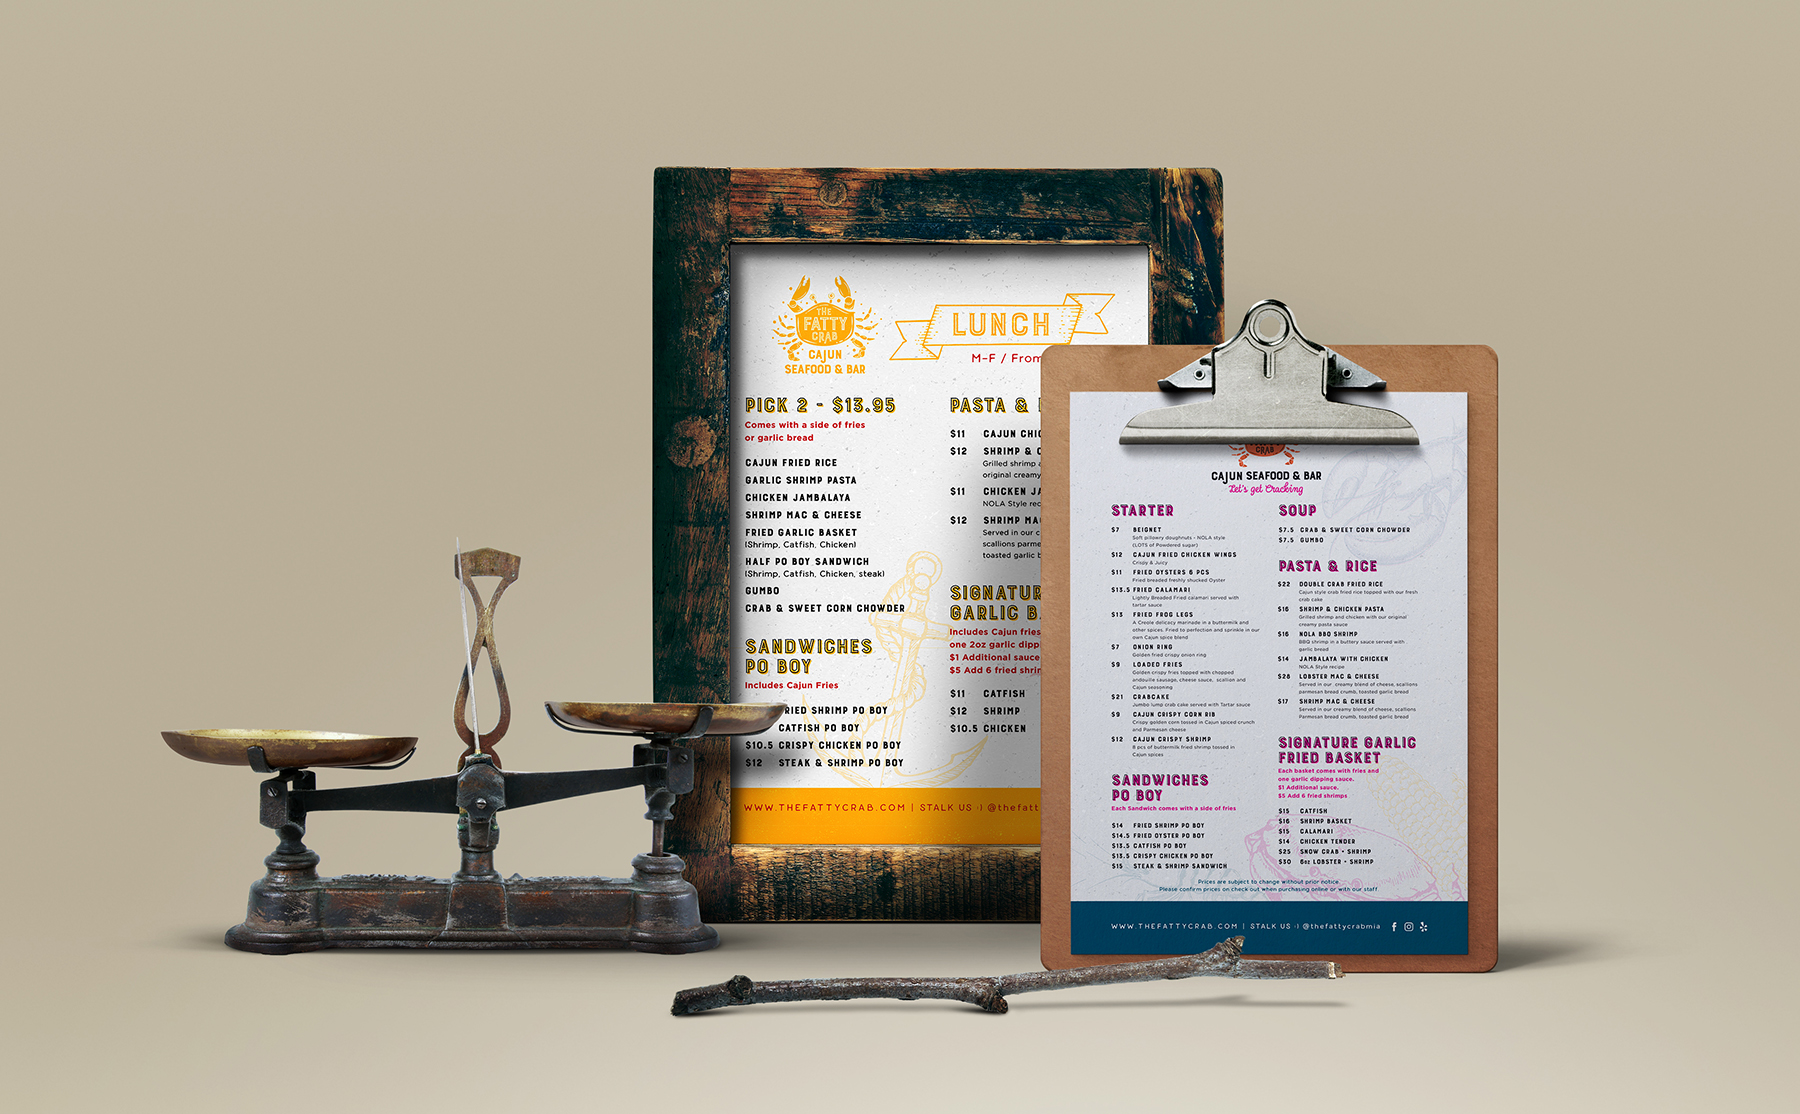 Restaurant menus are framed in wooden frame